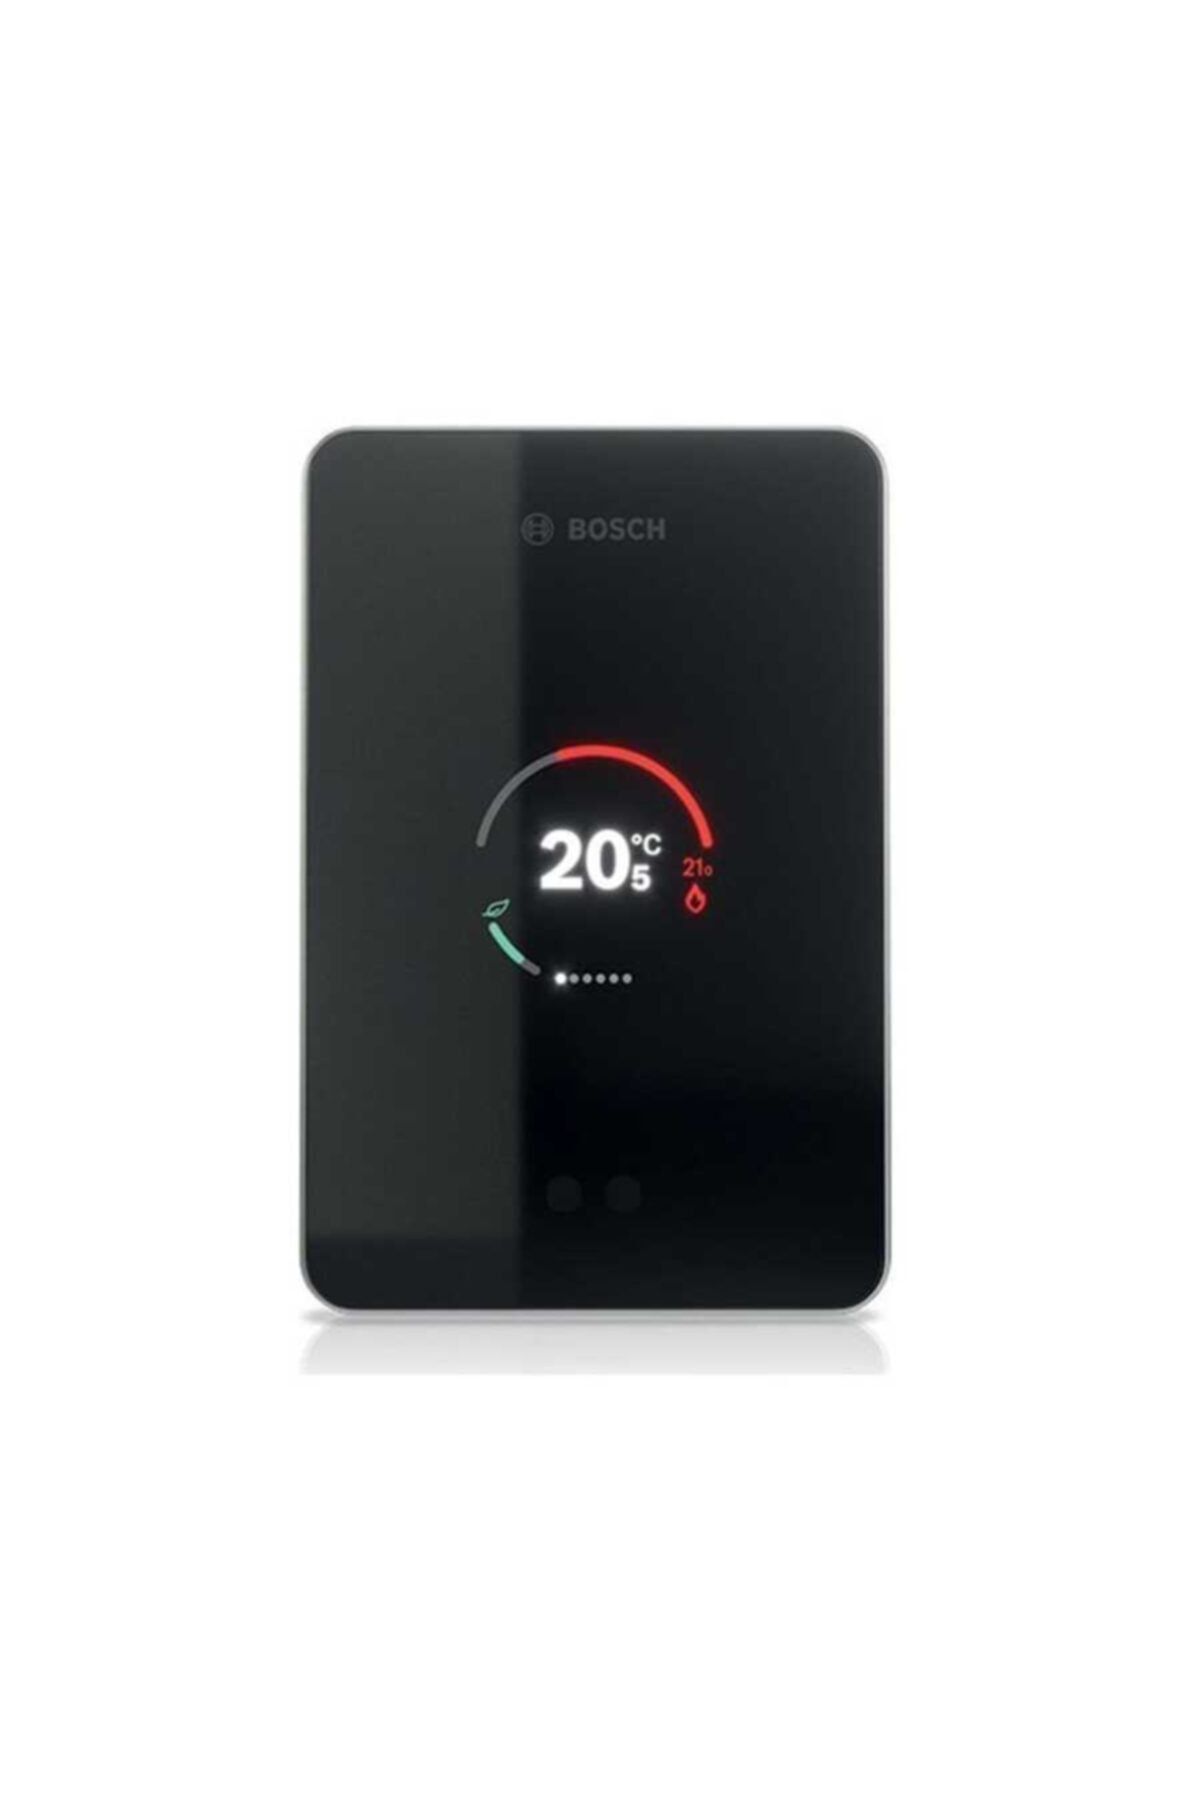 Bosch Ct 200 Easy Control Wifi Modülasyonlu Kablolu Oda Kumandası